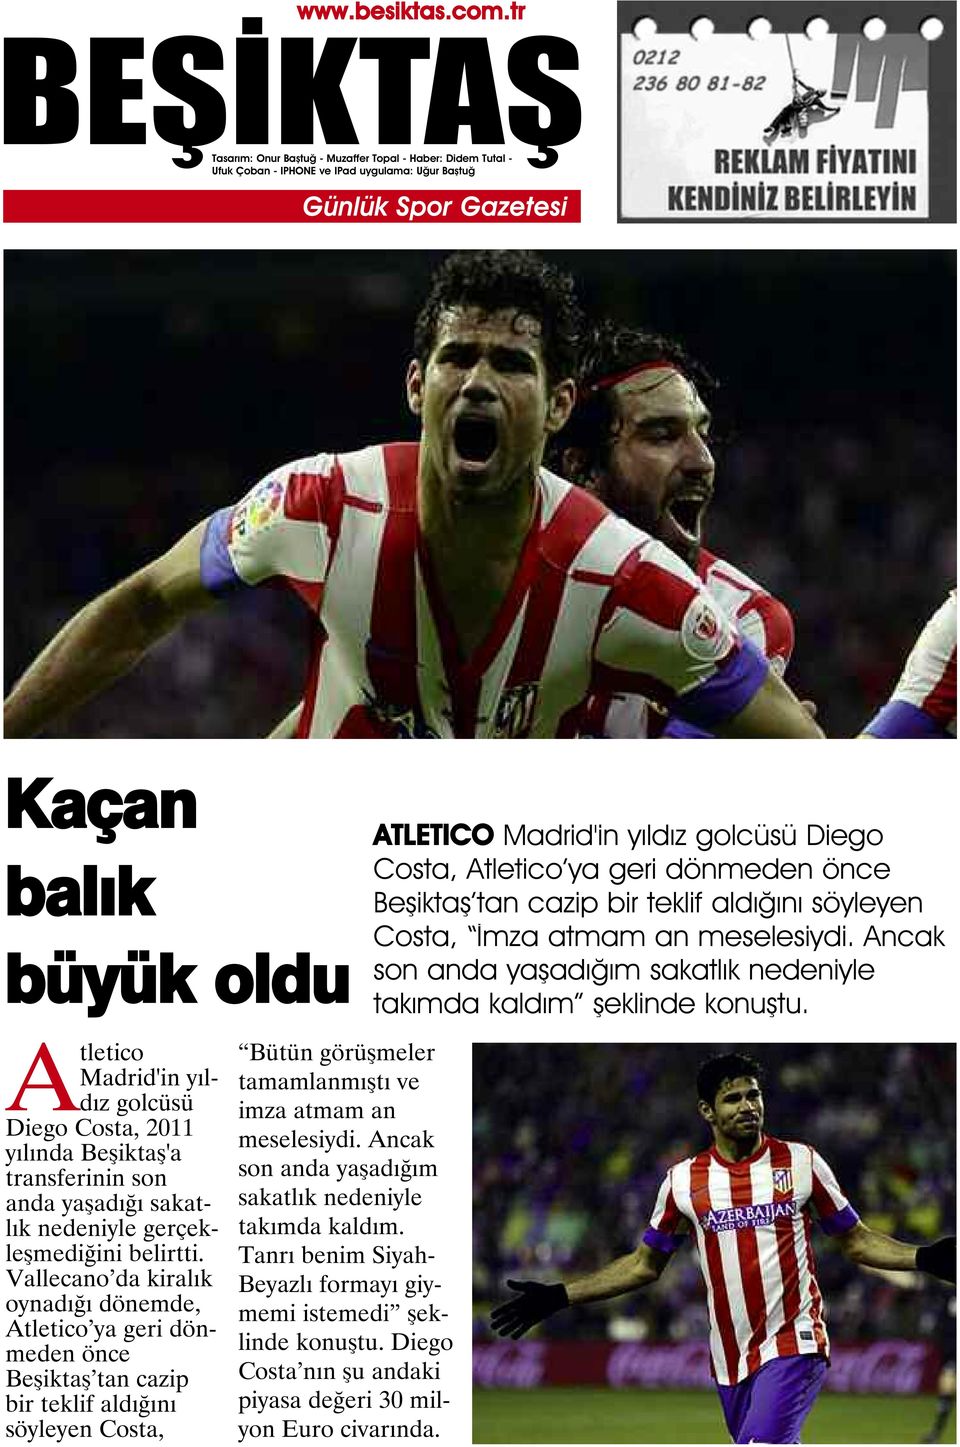 Atletico Madrid'in yıldız golcüsü Diego Costa, 2011 yılında Beşiktaş'a transferinin son anda yaşadığı sakatlık nedeniyle gerçekleşmediğini belirtti.